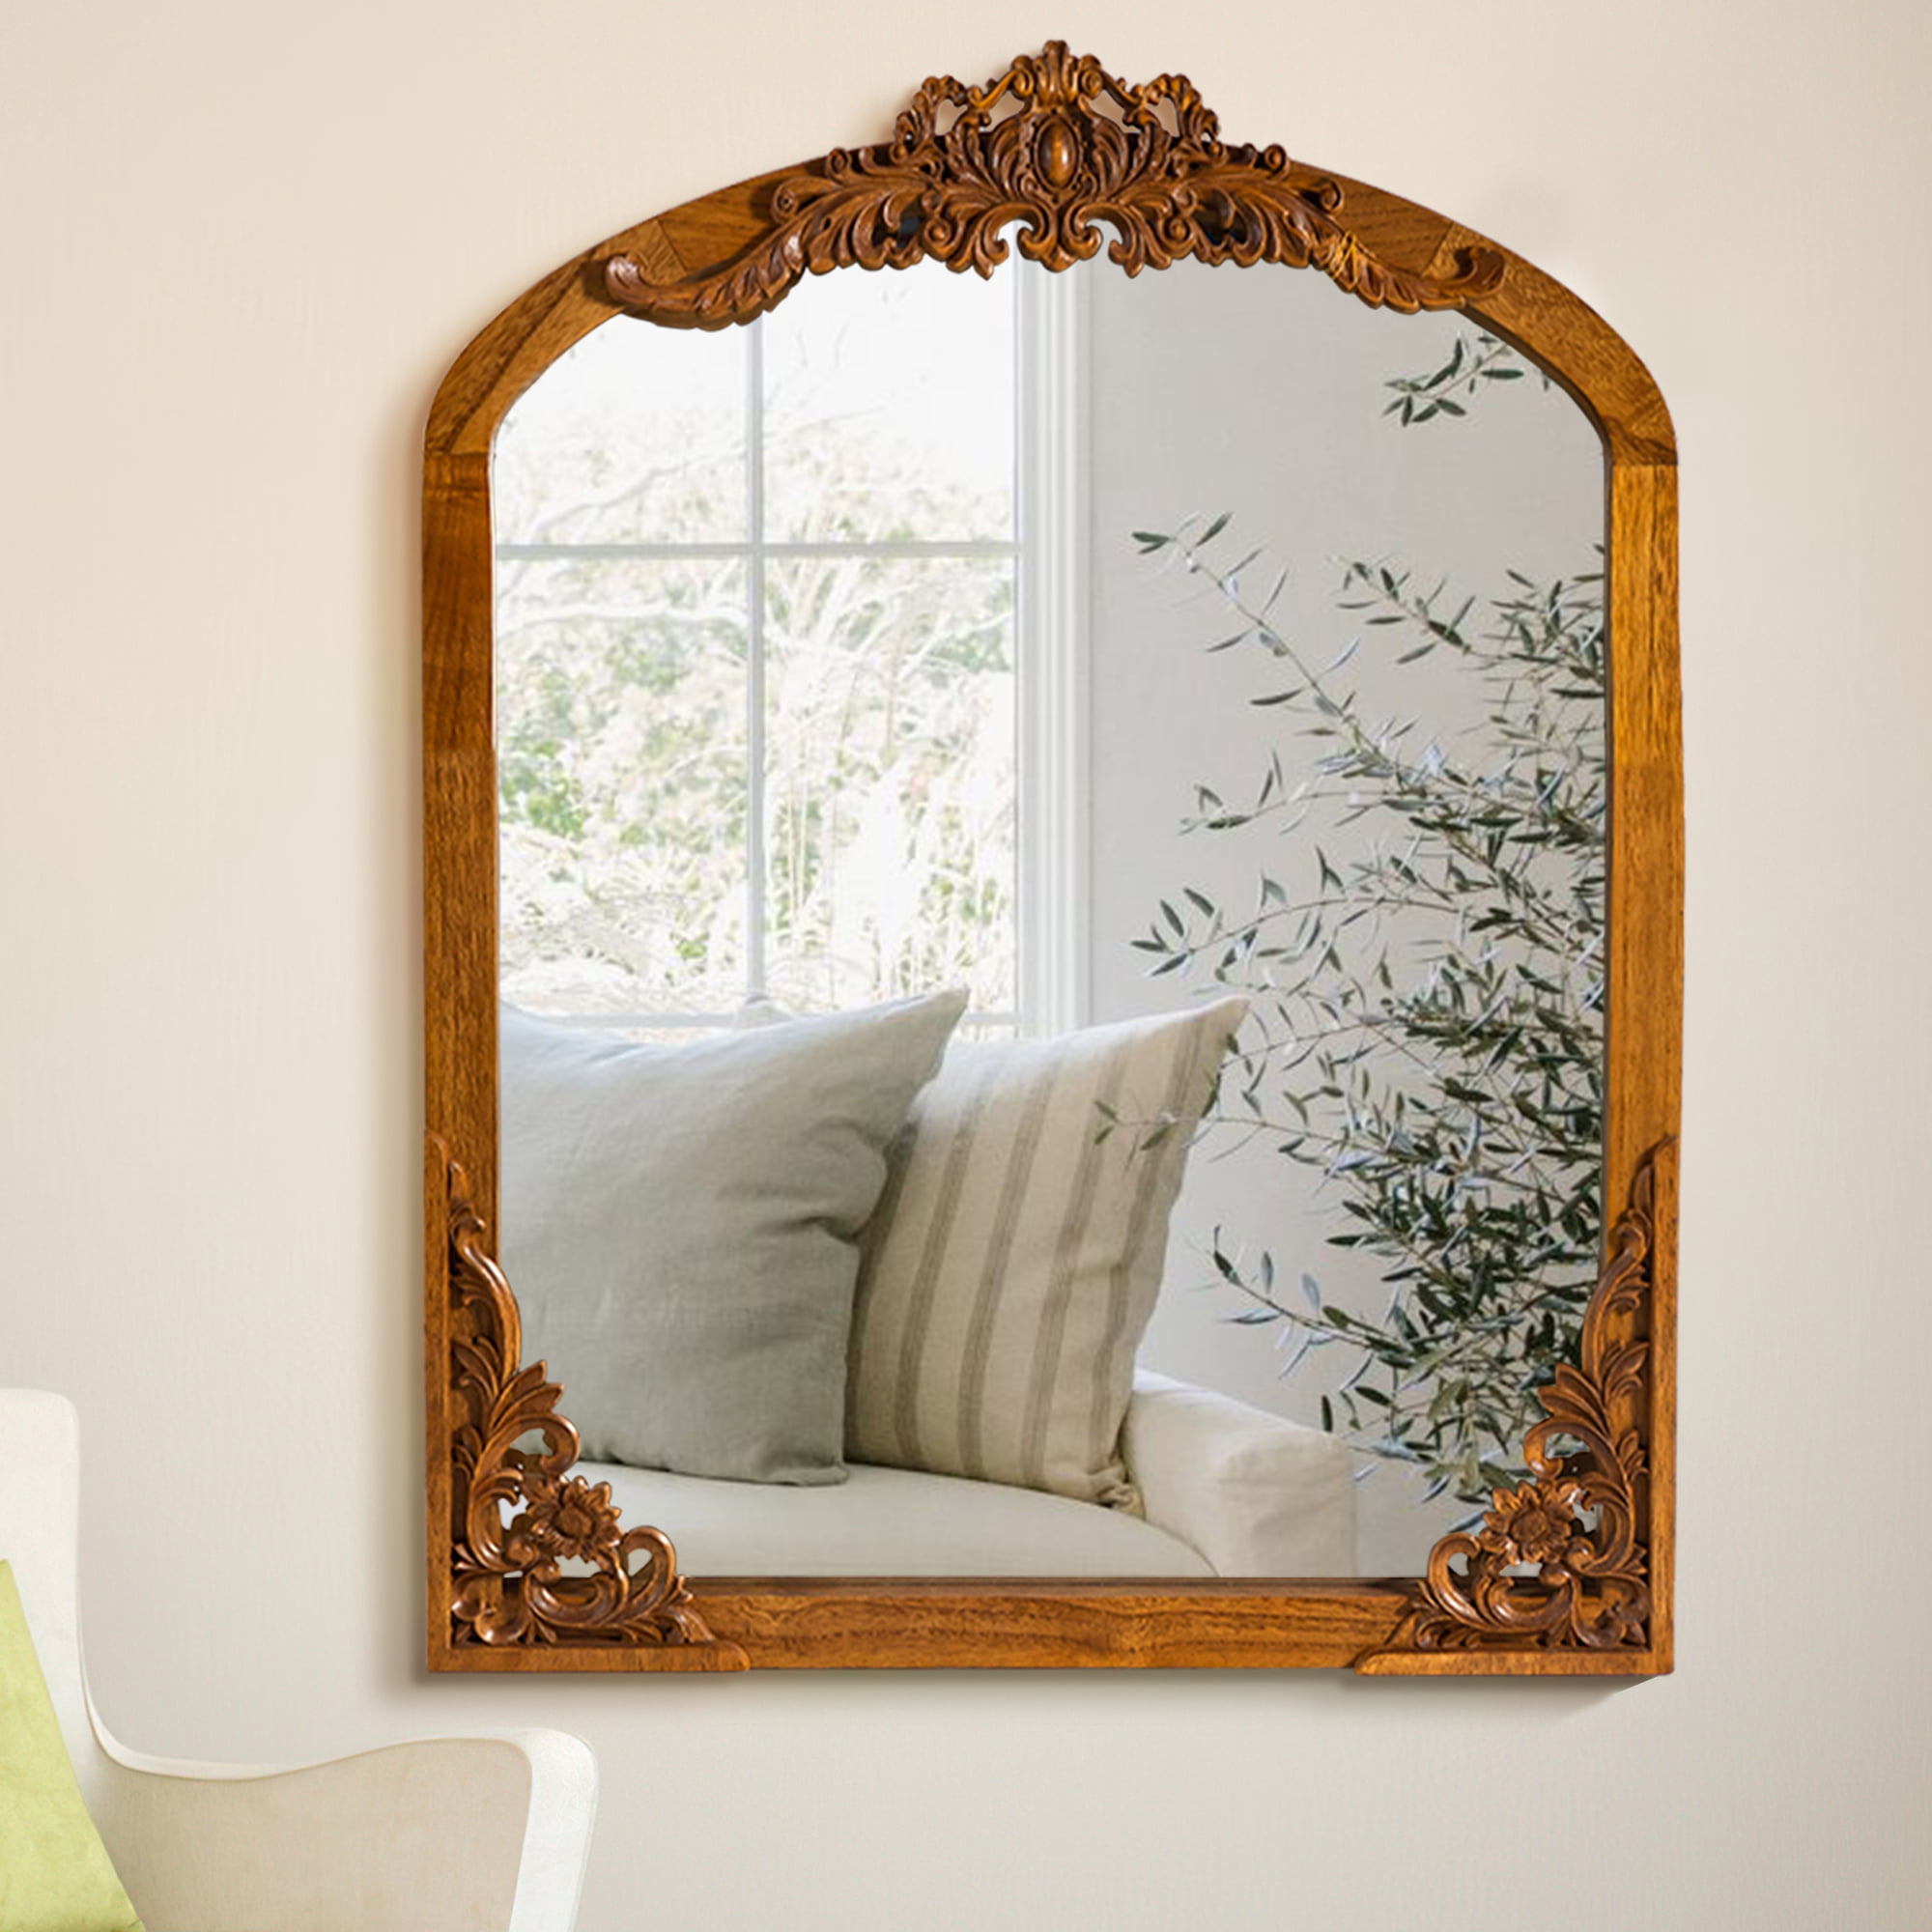 NeuType Wooden Arch Mirror Wall Mirror Vintage Decorative Mirror ...